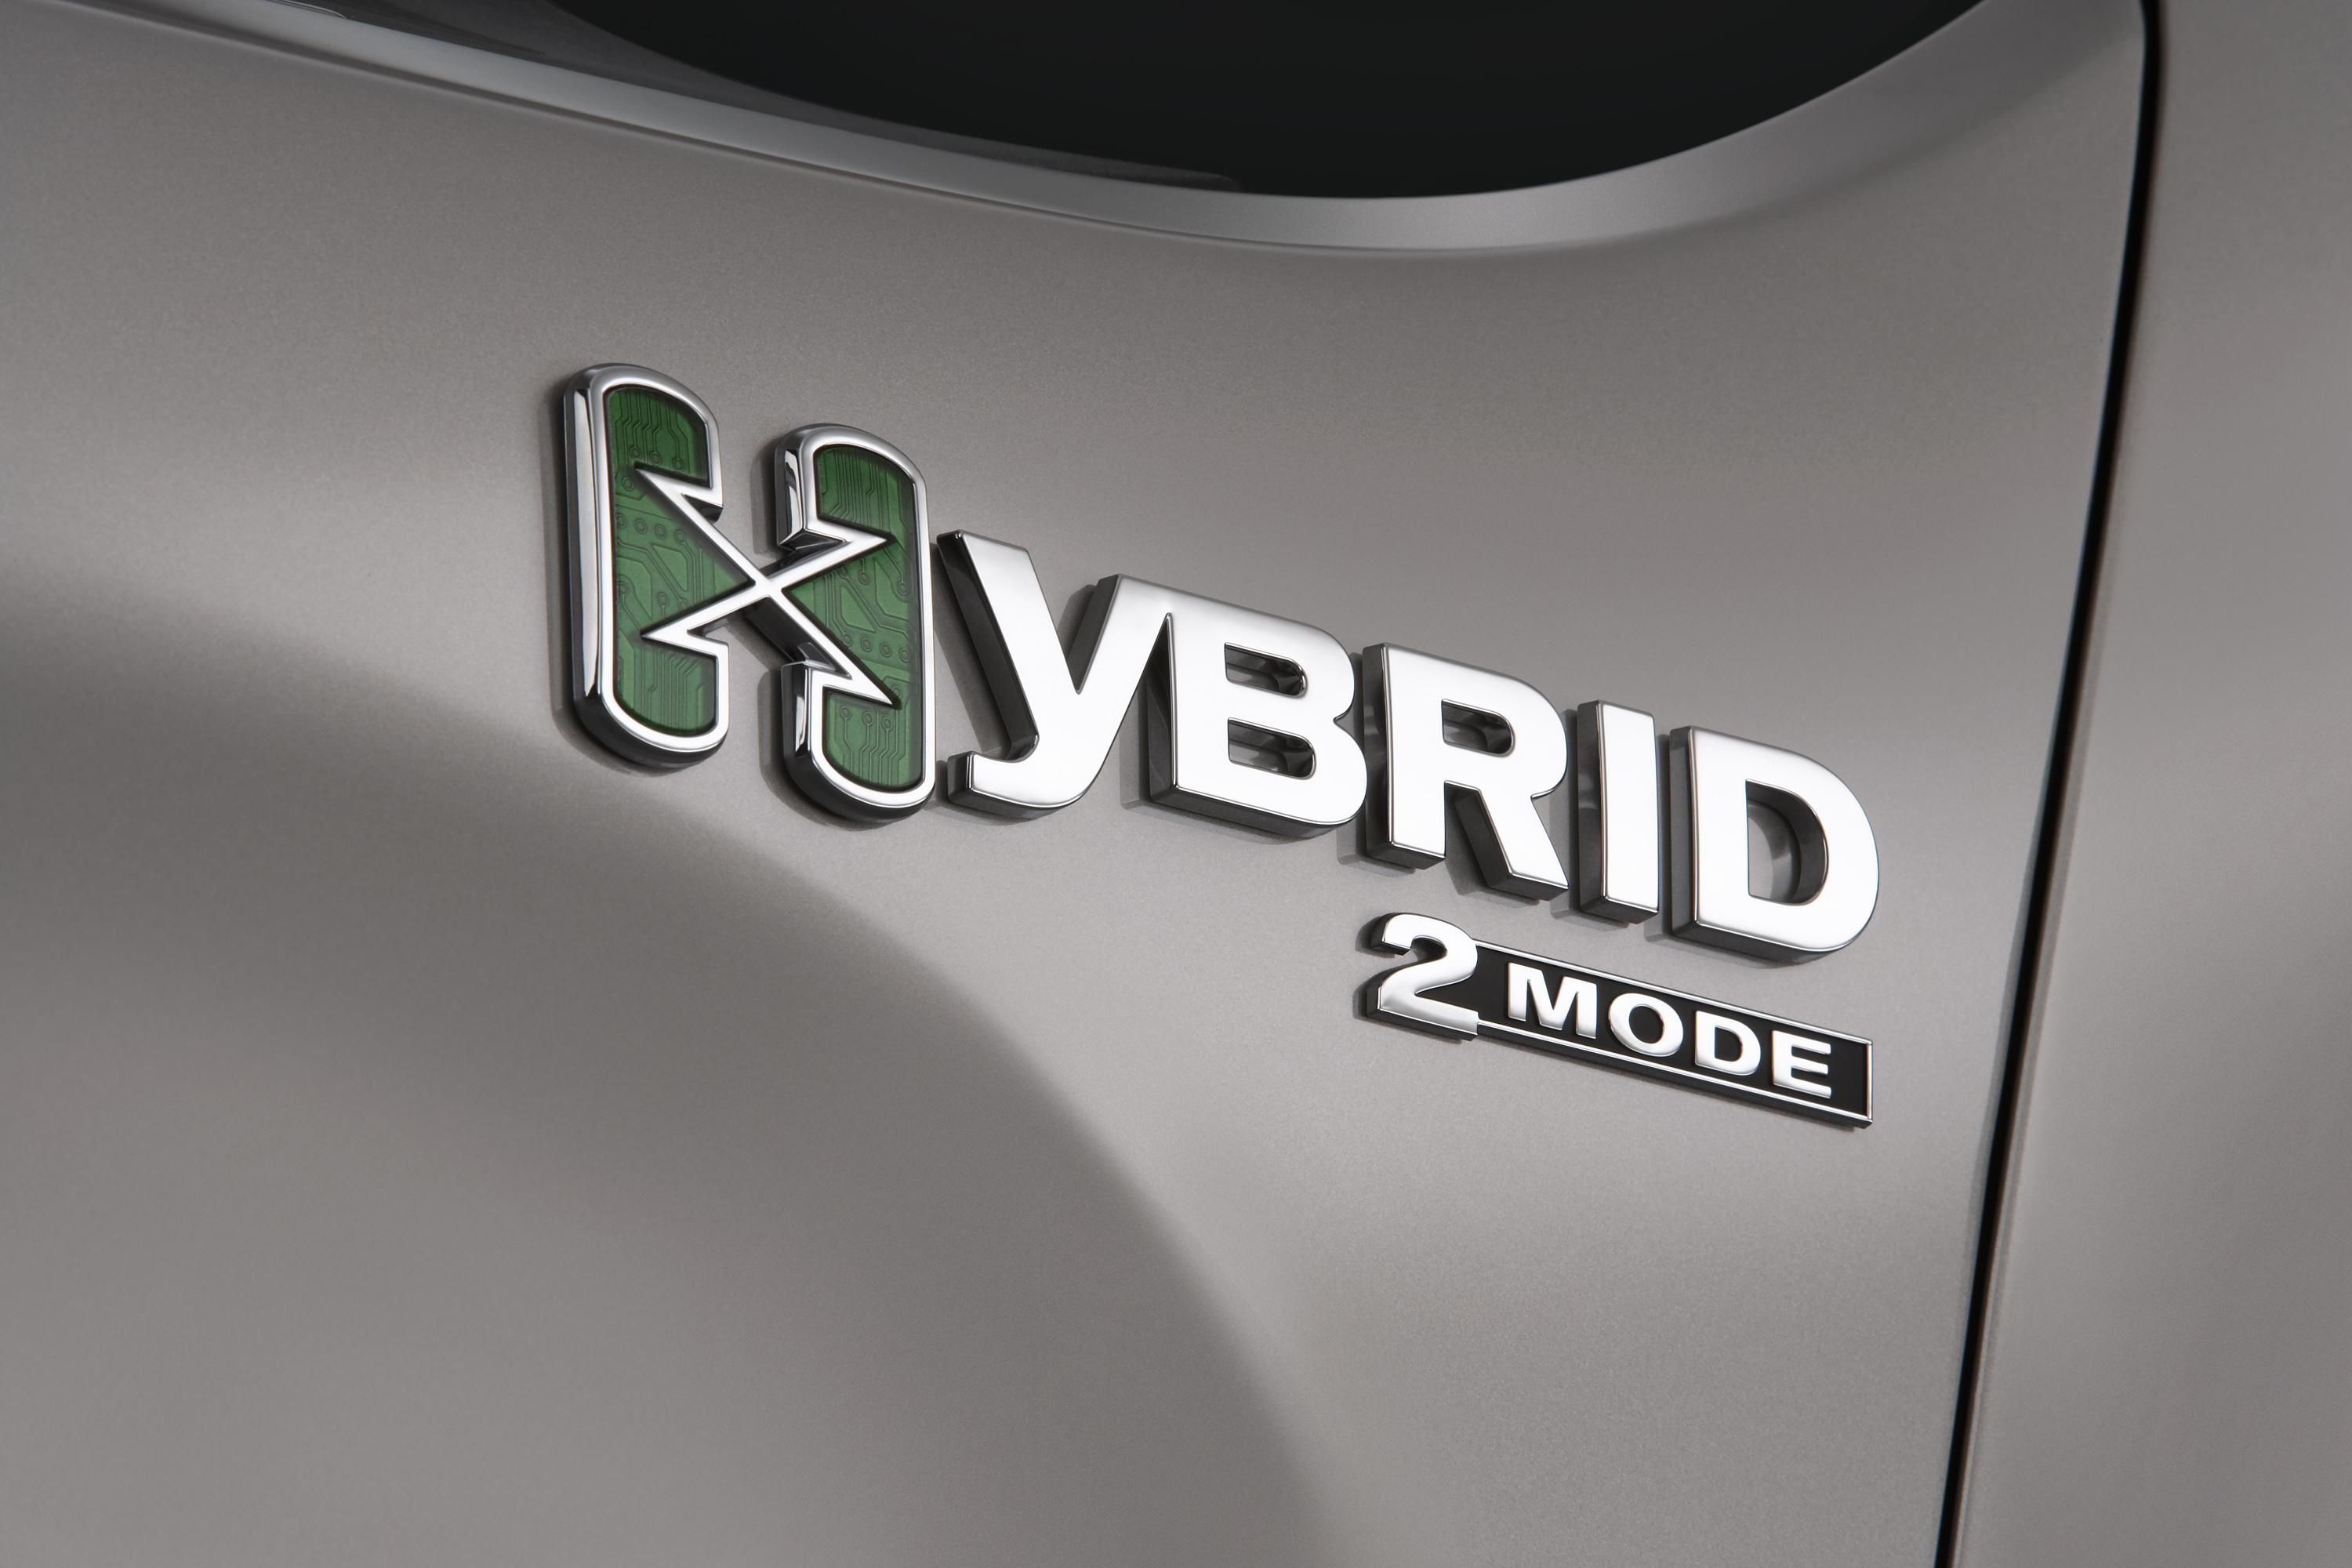 2009 Chevrolet Silverado Hybrid